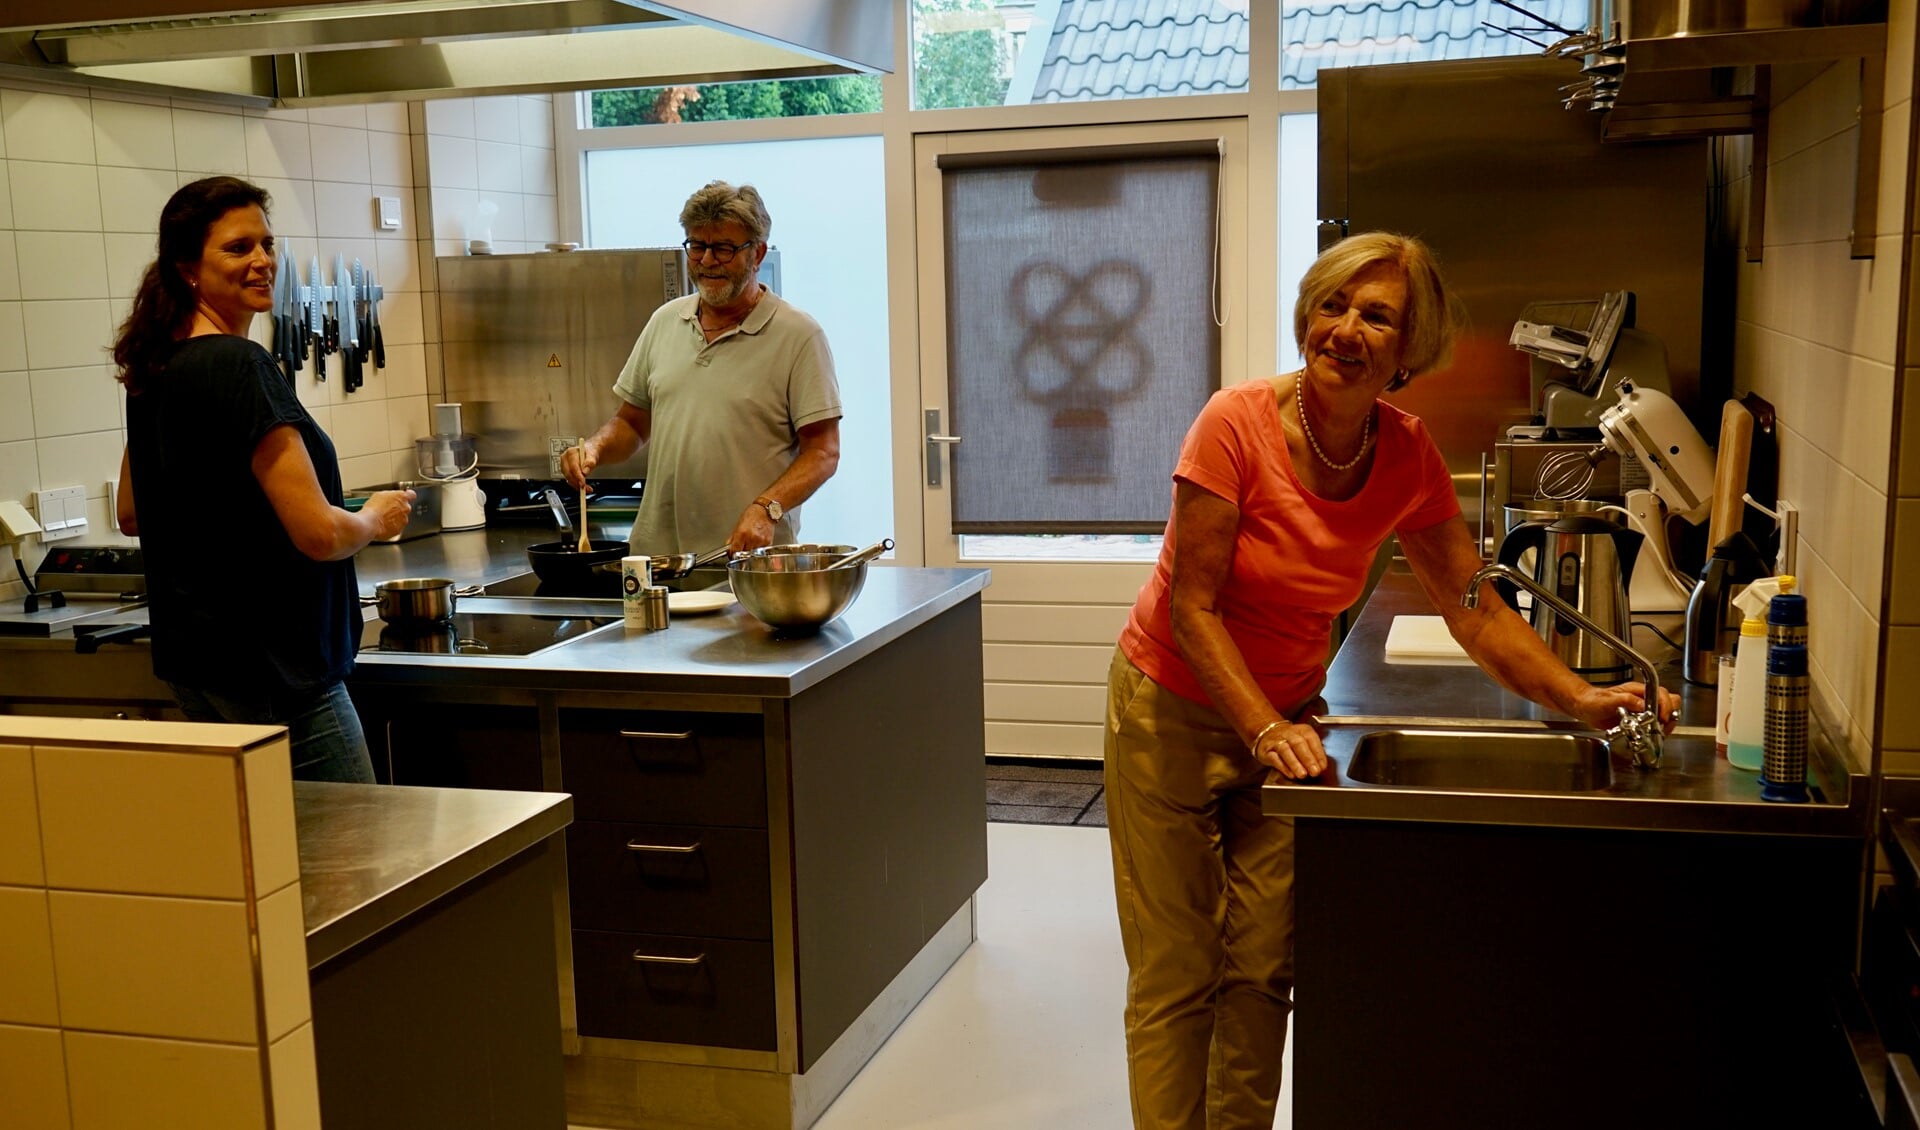 Voorzitter Raymonde Amorison, hoofdbeheerder Paul Molenkamp en beheerder Tamara Nobel in de keuken van De Blaercom.